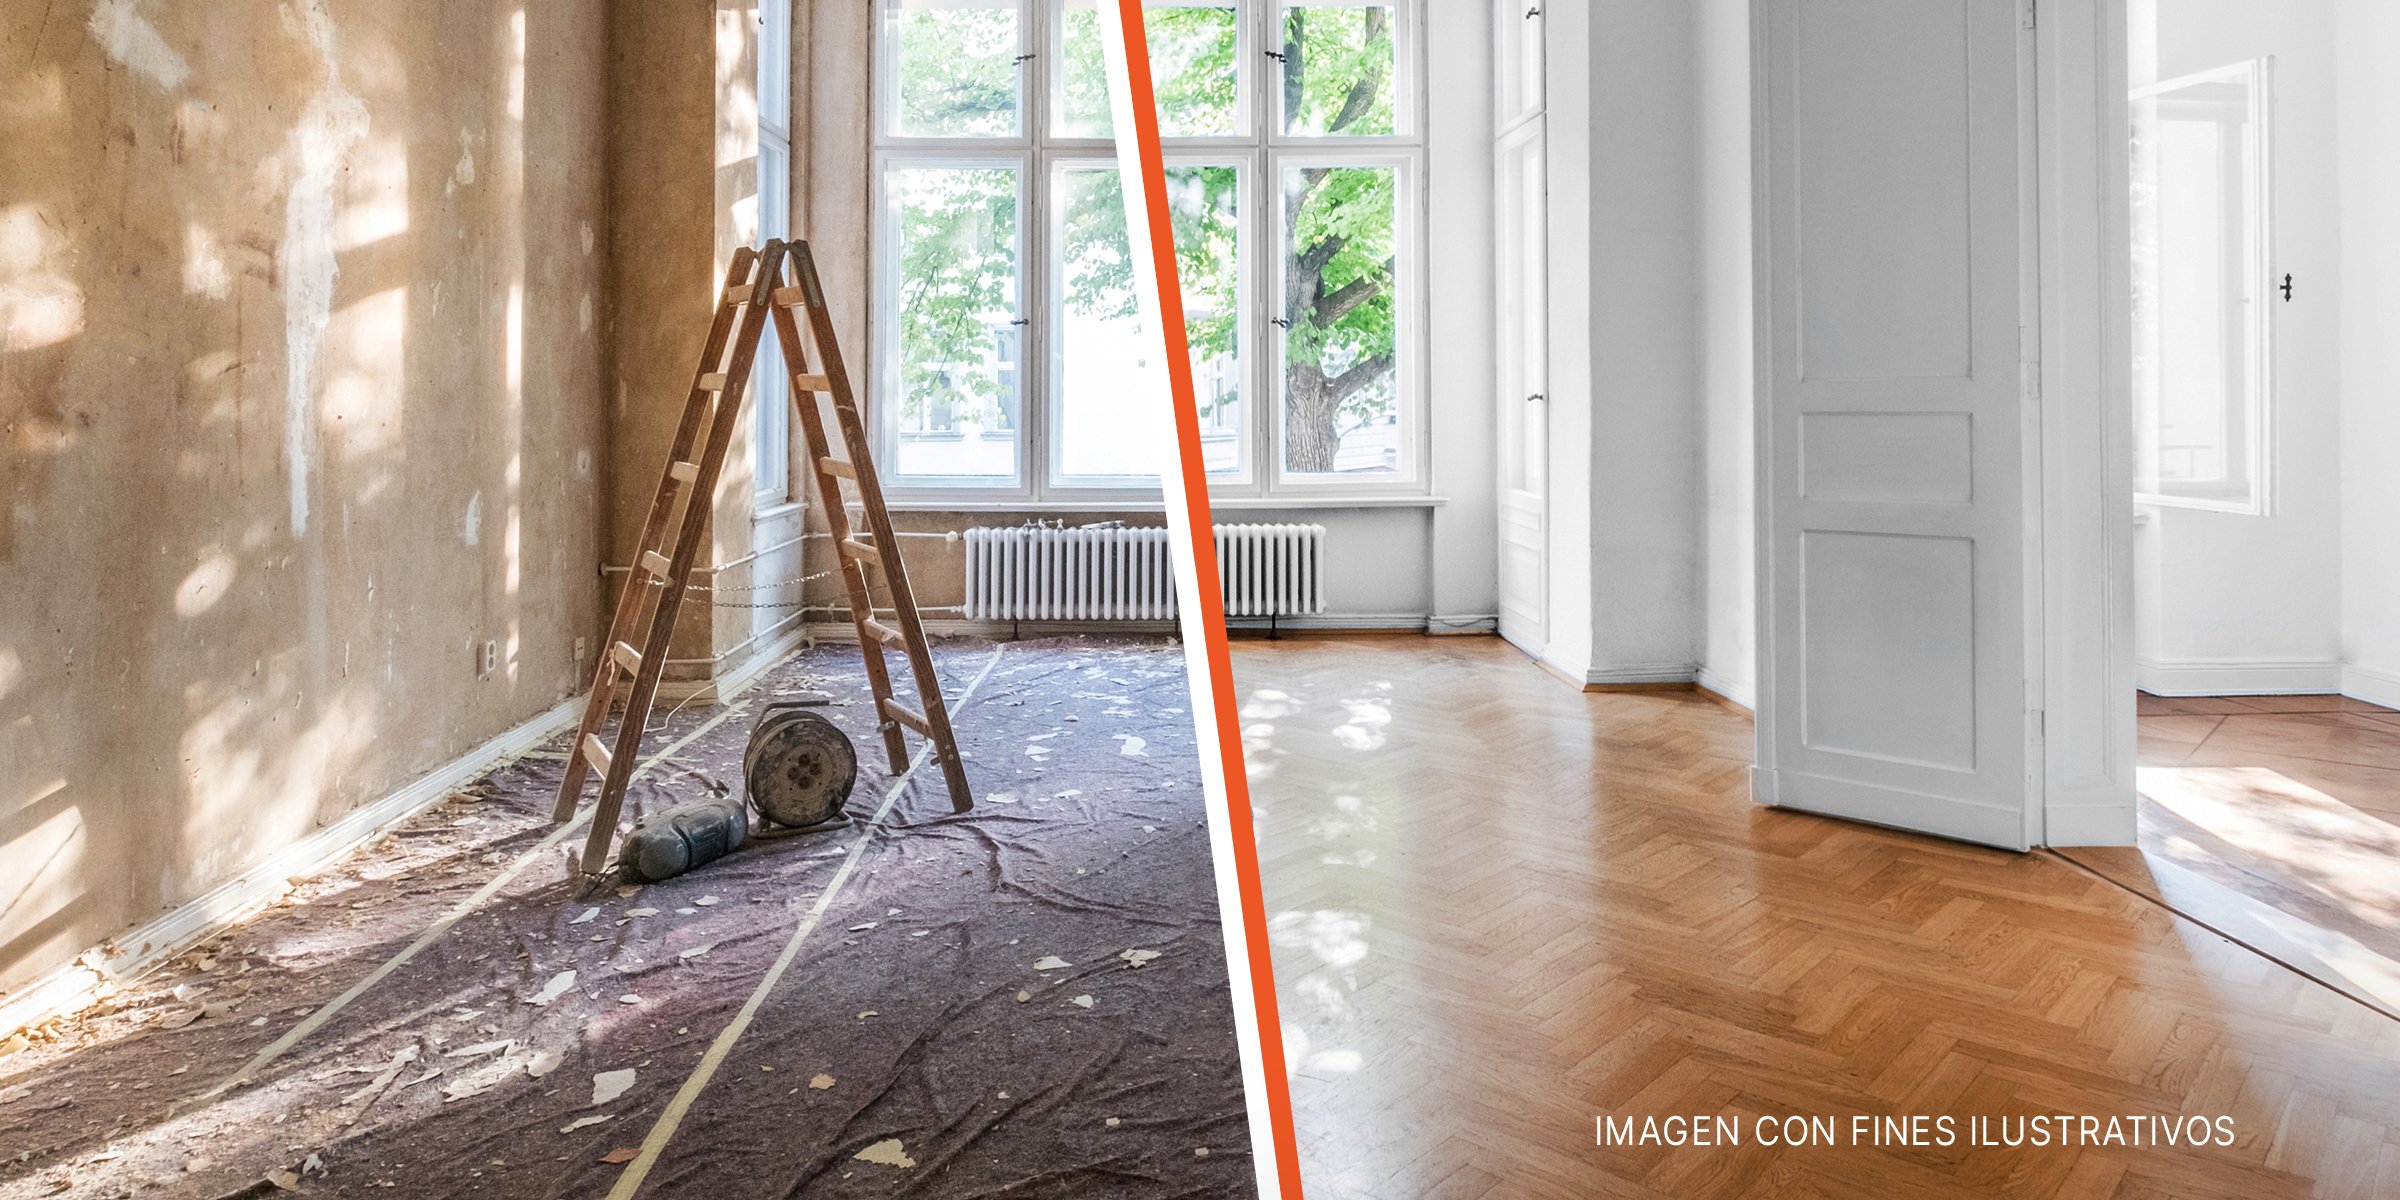 Casa antes y después de la reforma | Foto: Shutterstock